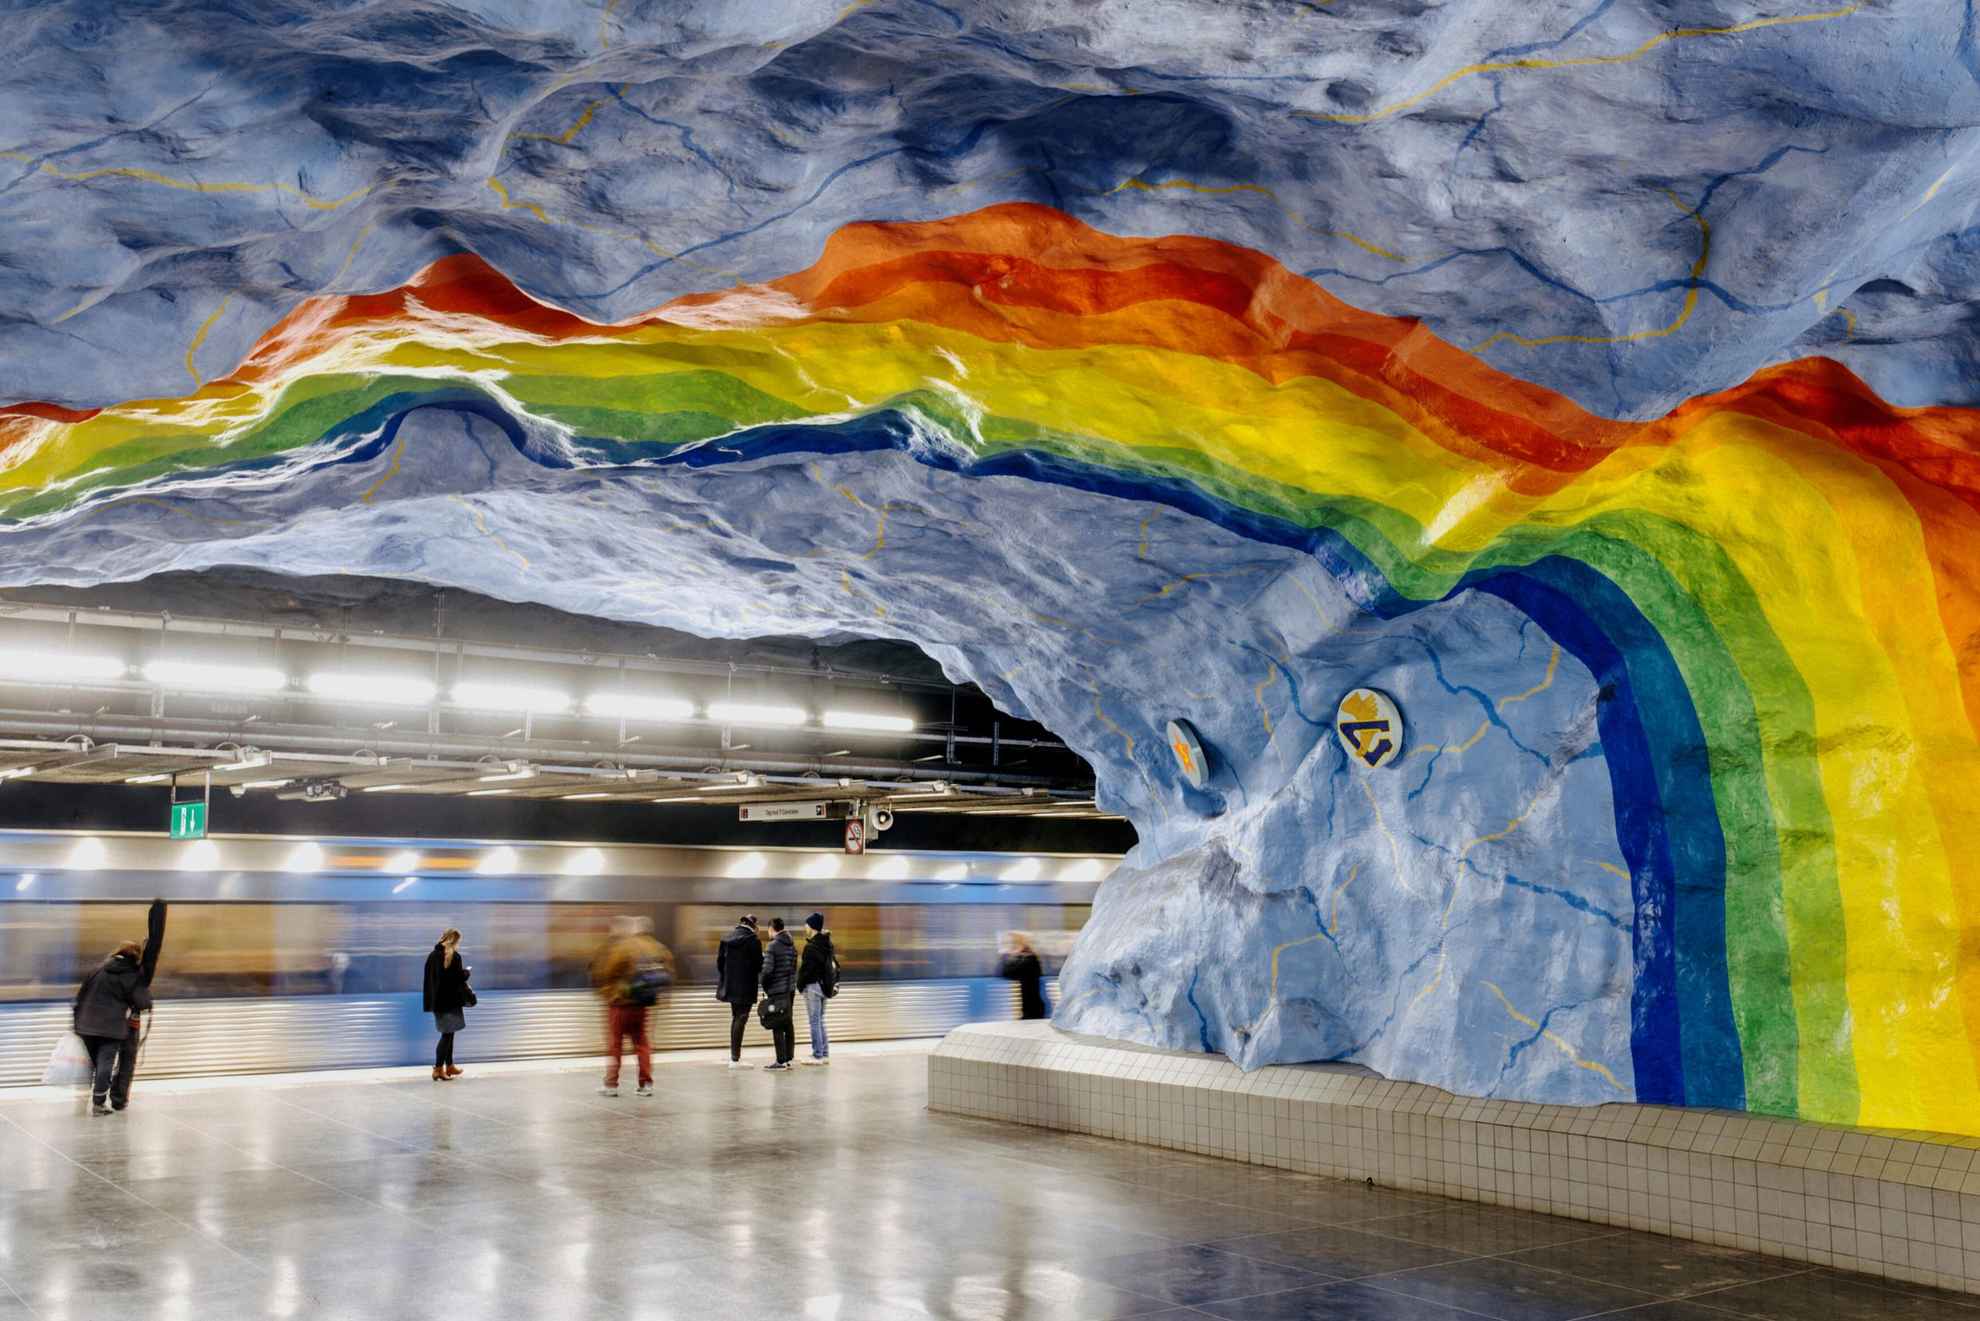 Ein Regenbogen in lebhaften Farben, der in einer U-Bahnstation an die Decke gemalt ist.